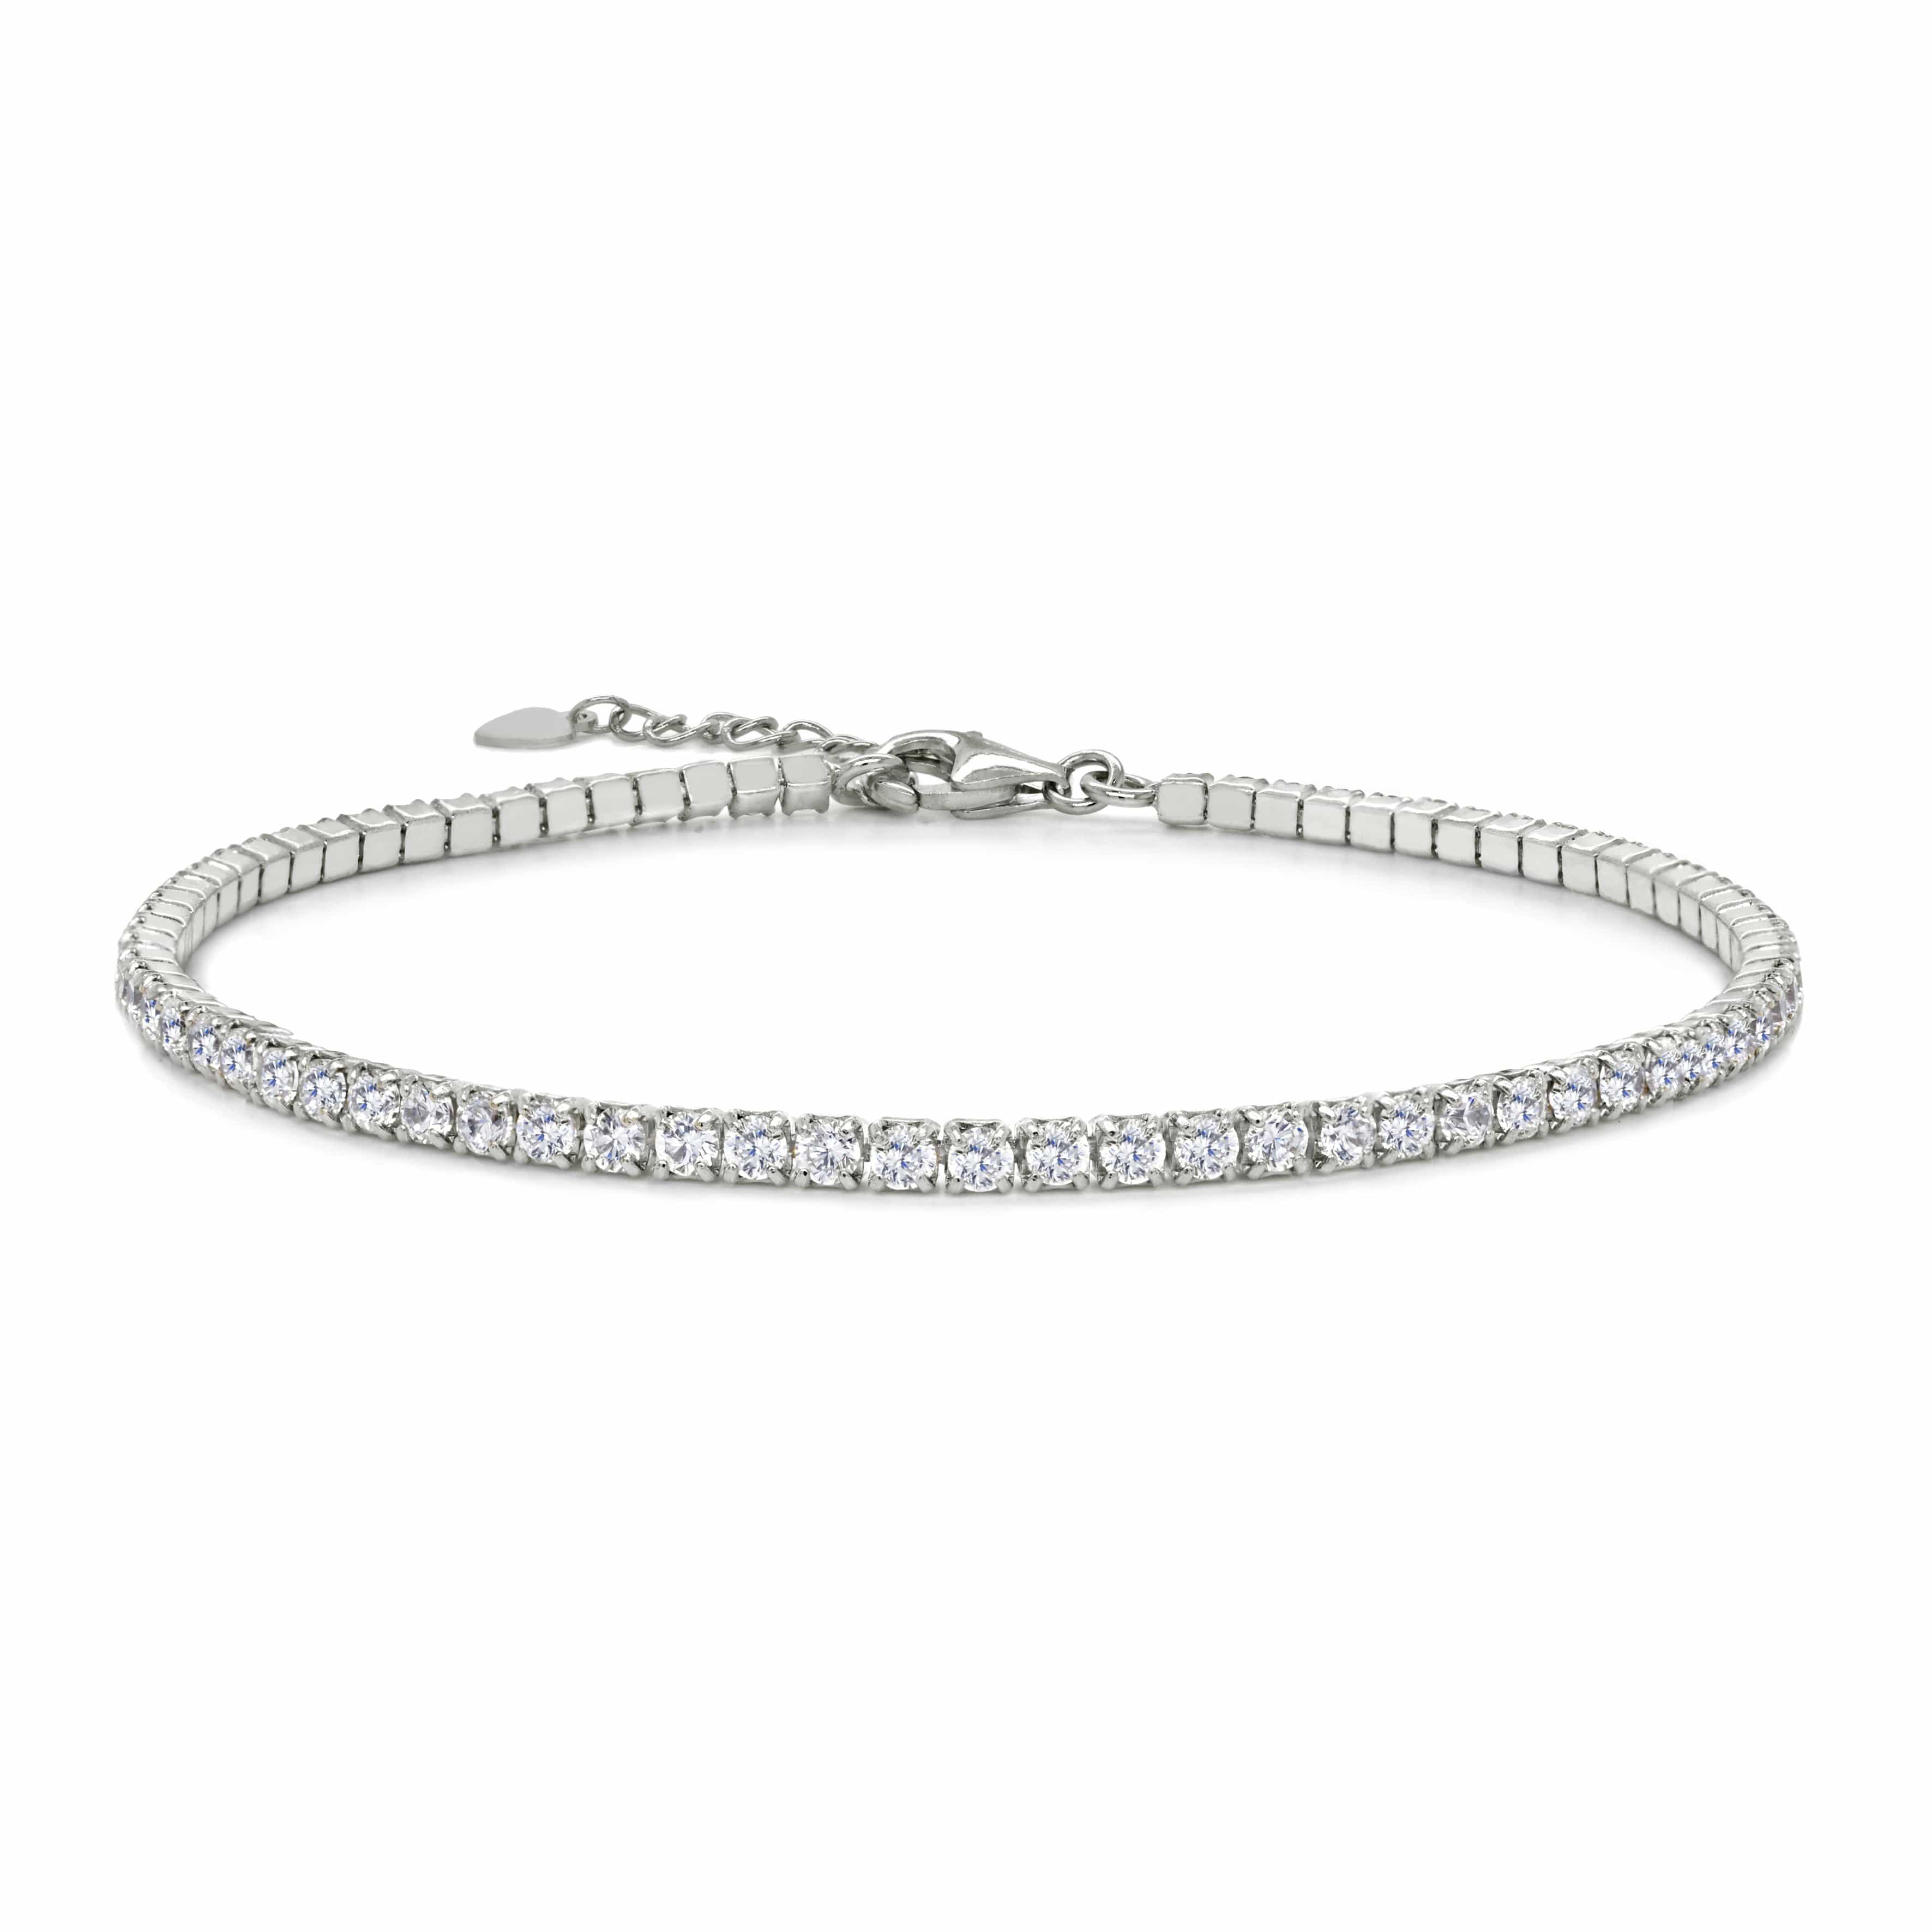 Lynora Jewellery Bracelet 7.5" / Sterling Silver / Clear Tennis Bracelet Sterling Silver